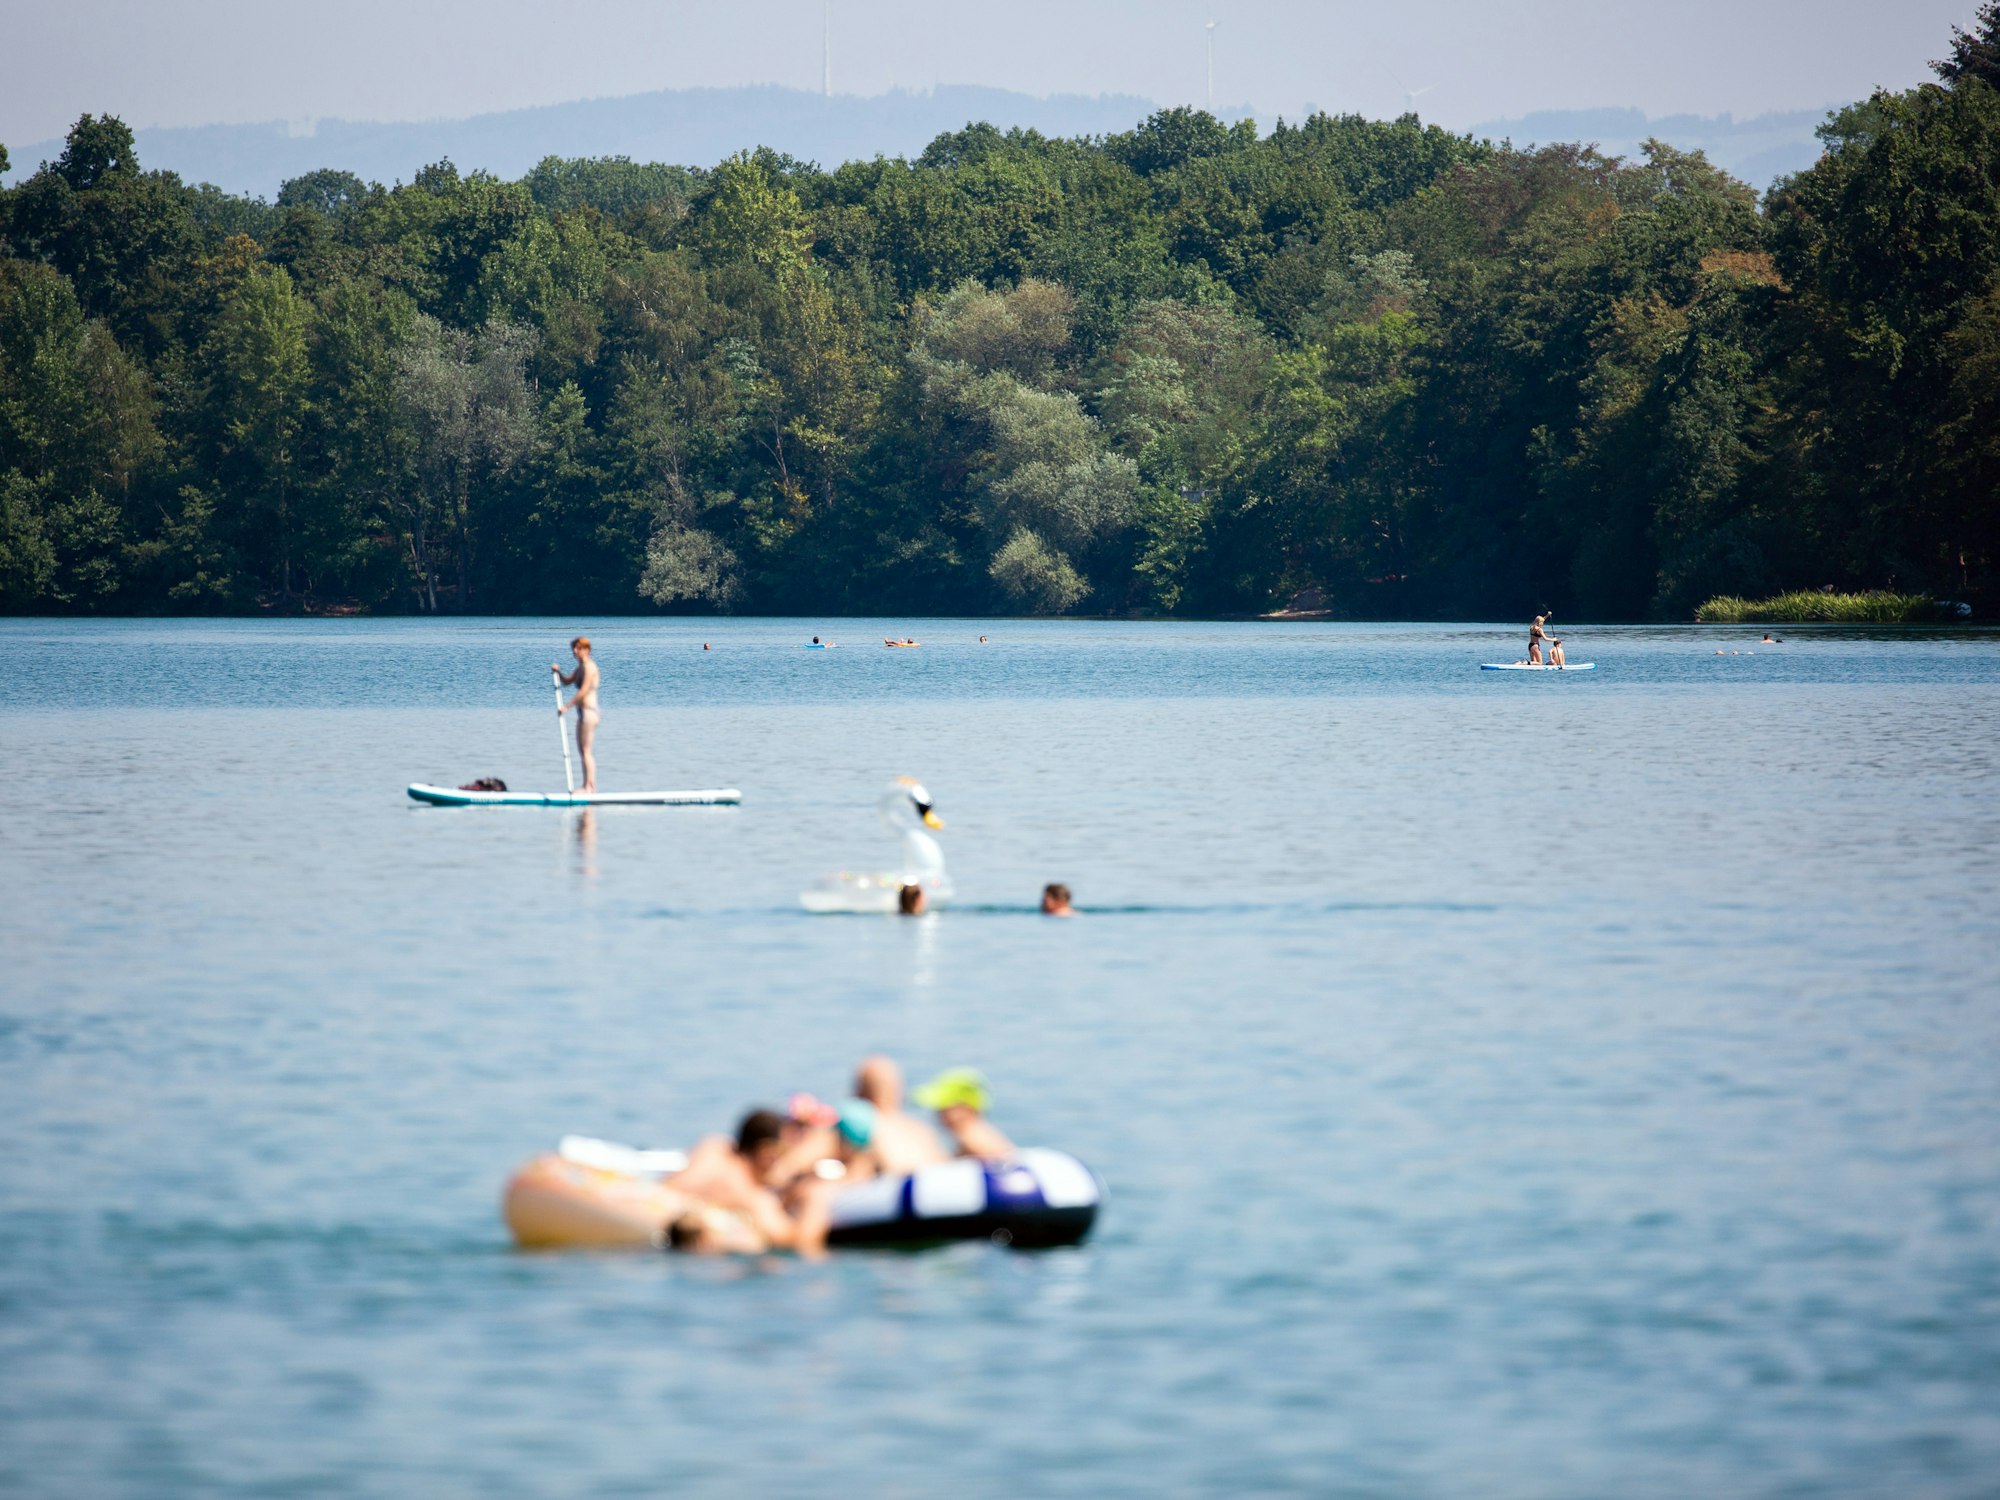 Badegäste genießen das schöne Wetter am Opfinger See in Baden-Württemberg.